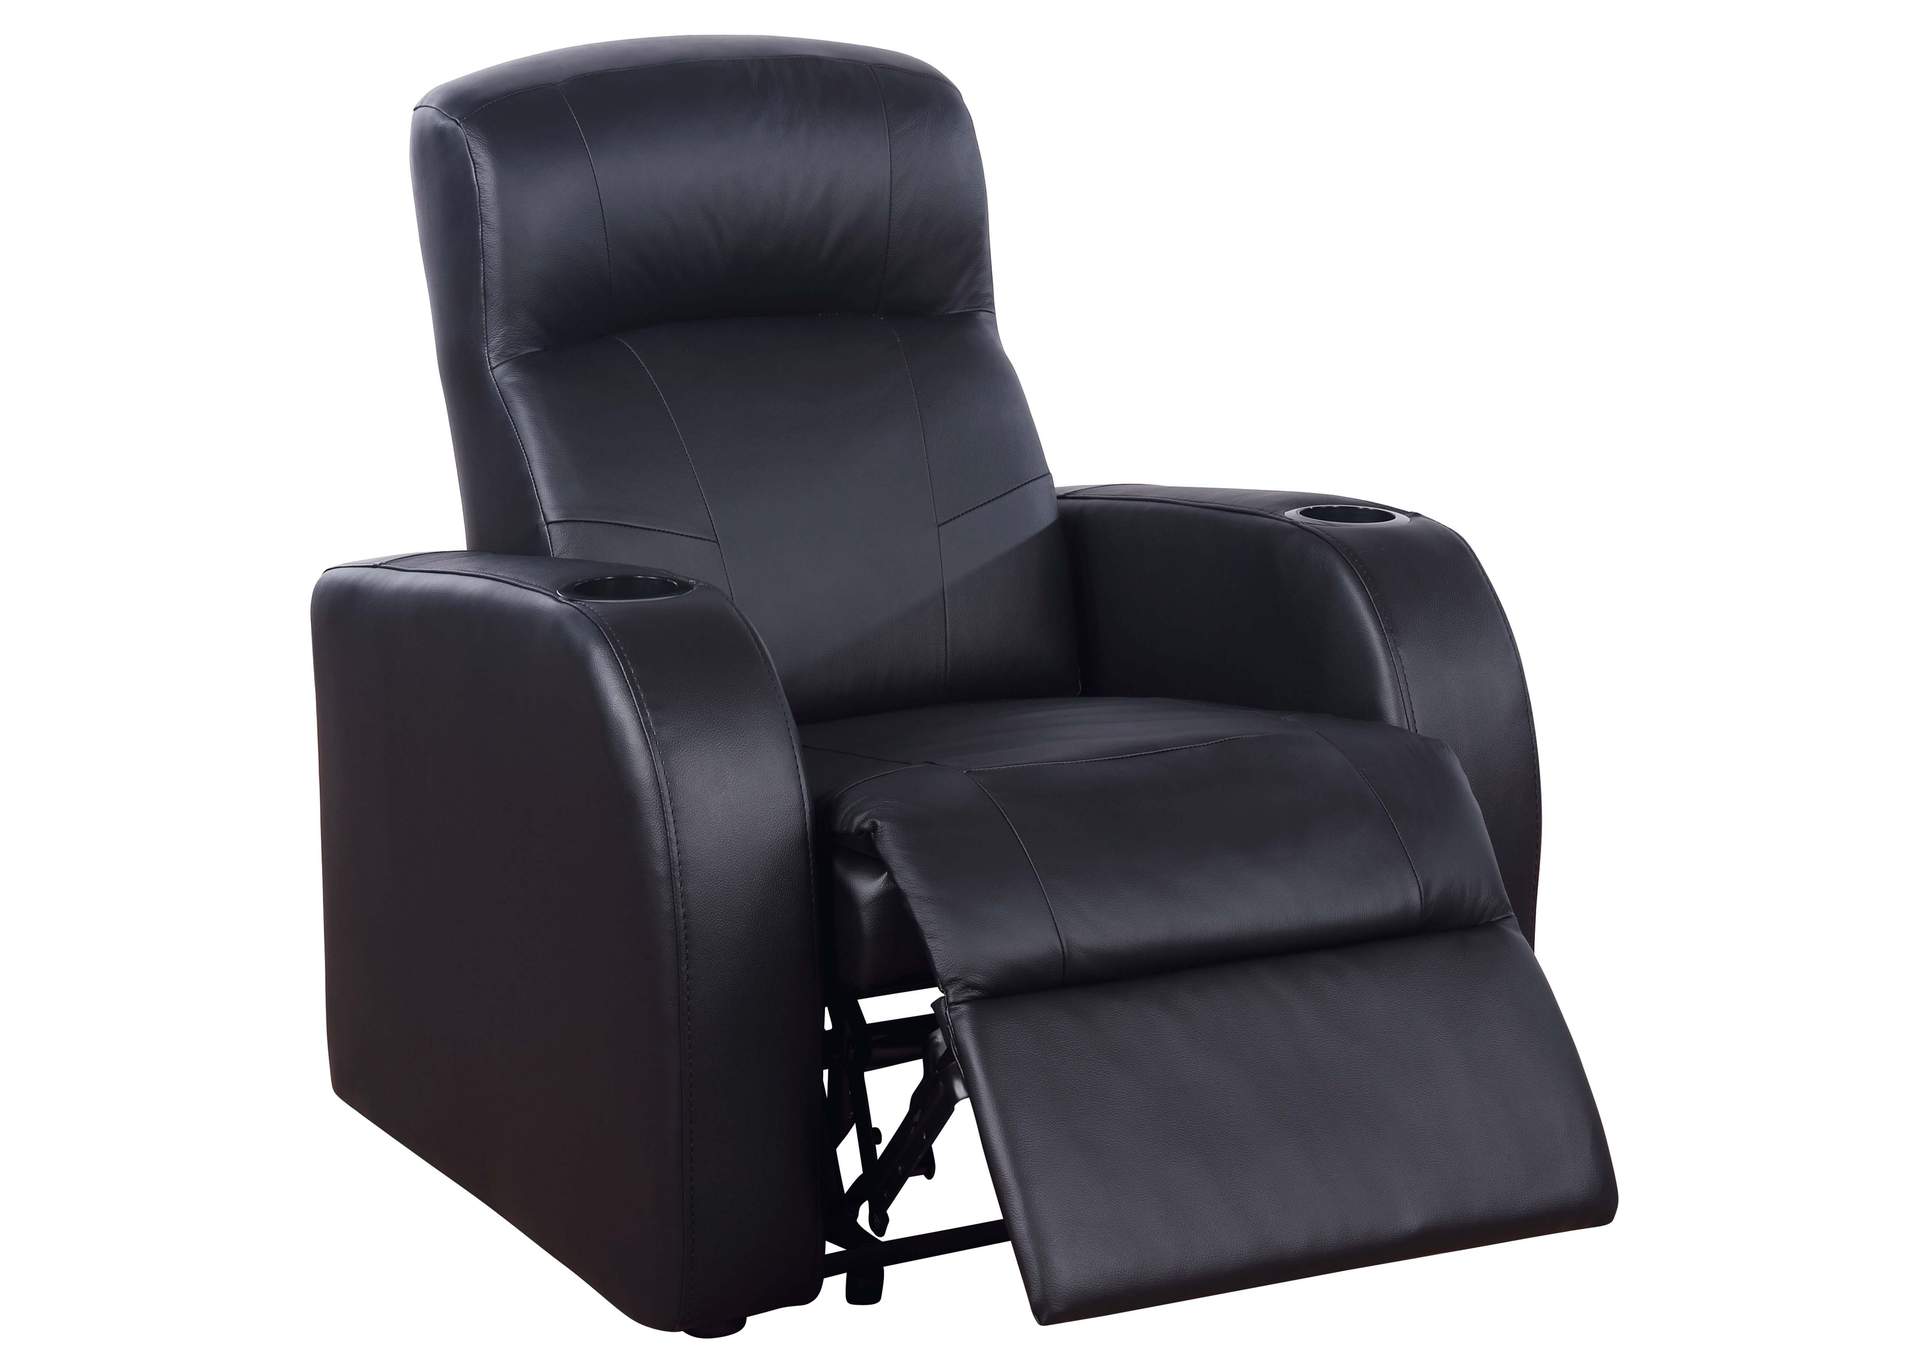 Cyrus Upholstered Recliner Living Room Set Black,Coaster Furniture